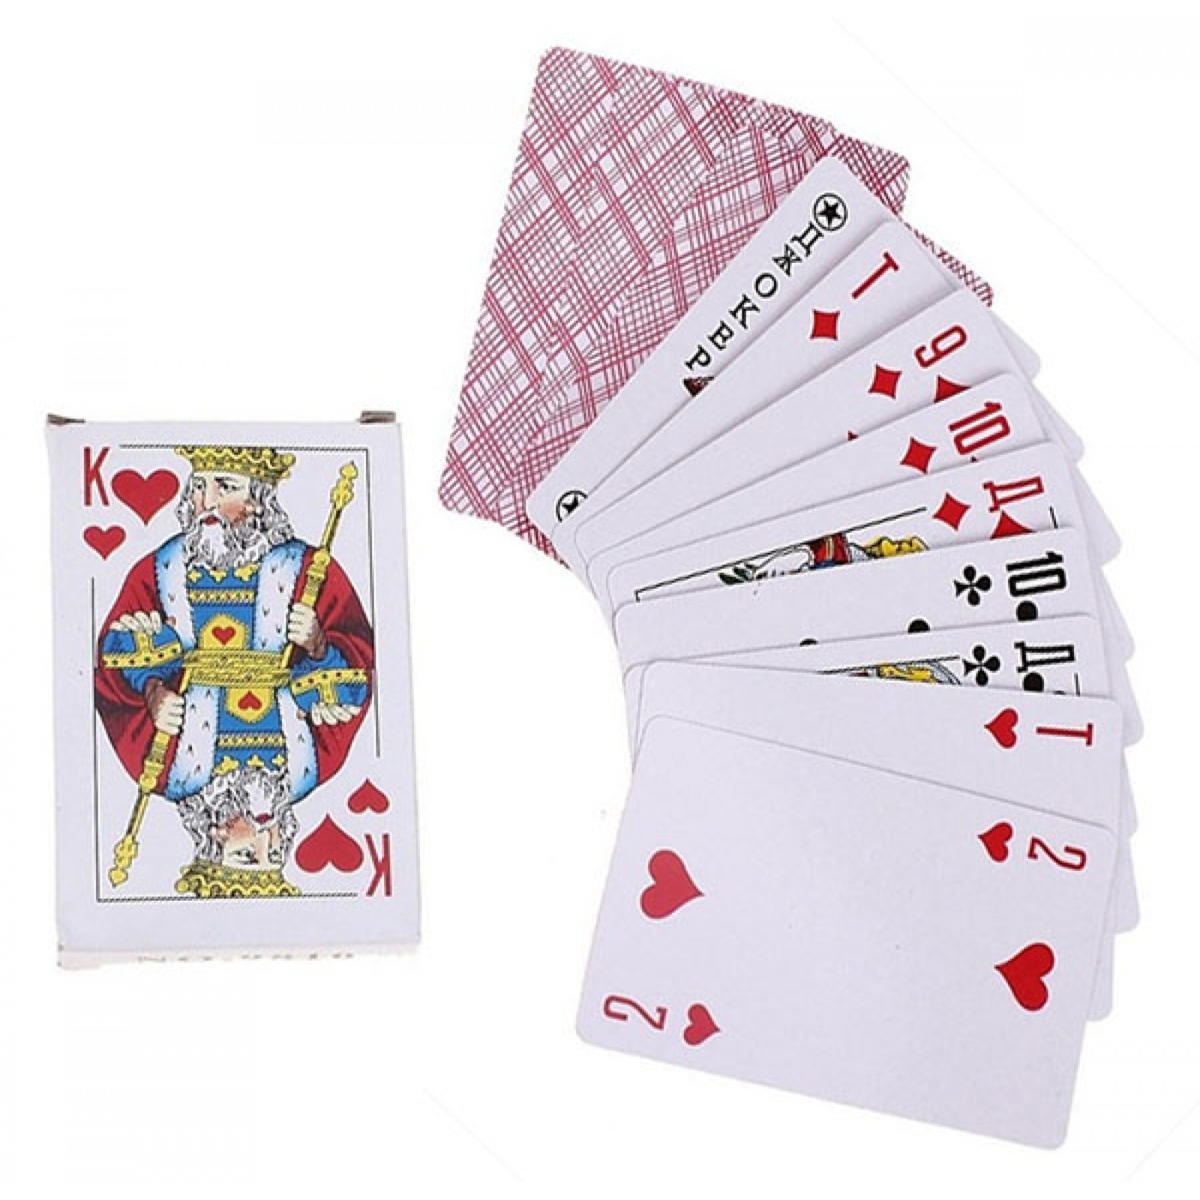 Новая колода карт. Карты тройка семерка туз. Колода карт. Колода игральных карт. Карты игральные 54.